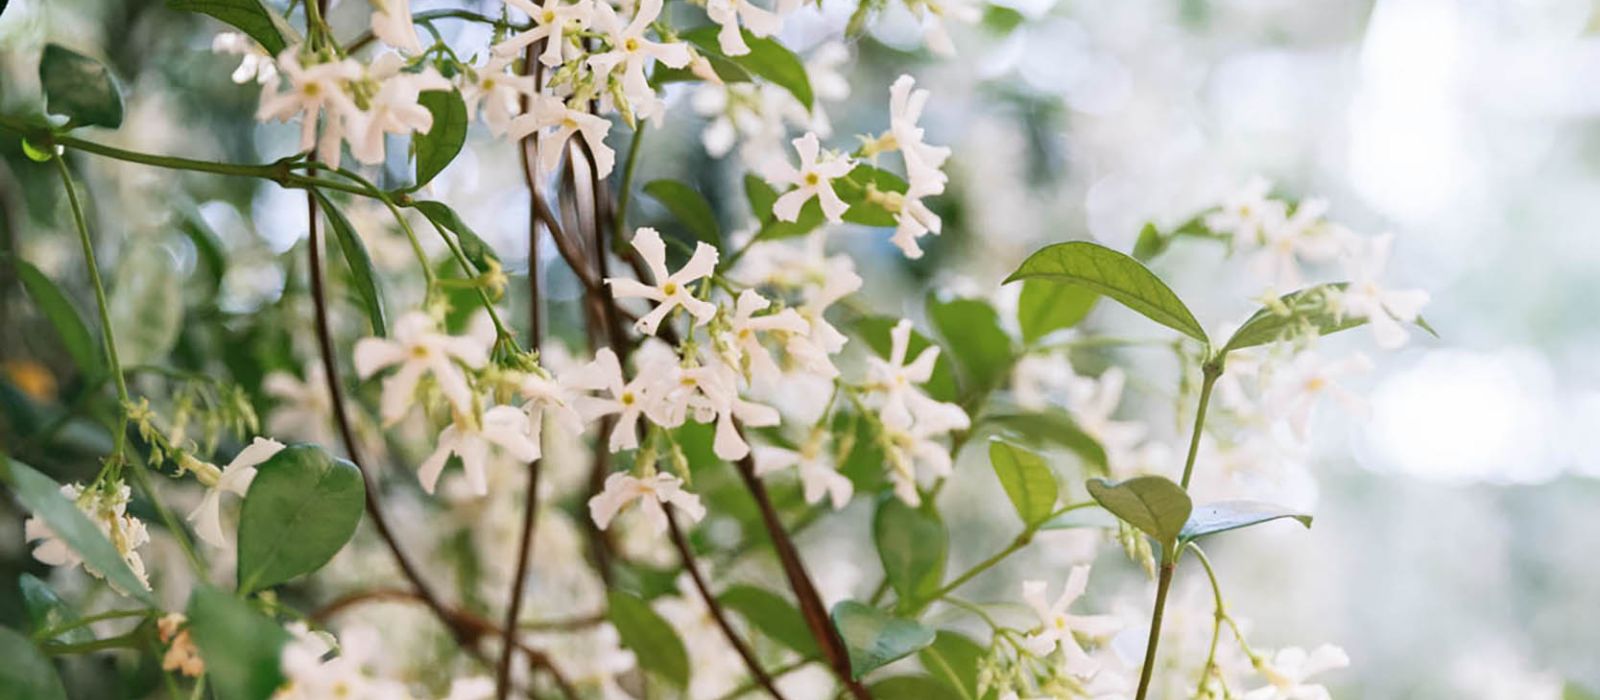 Blooming jasmine vine
